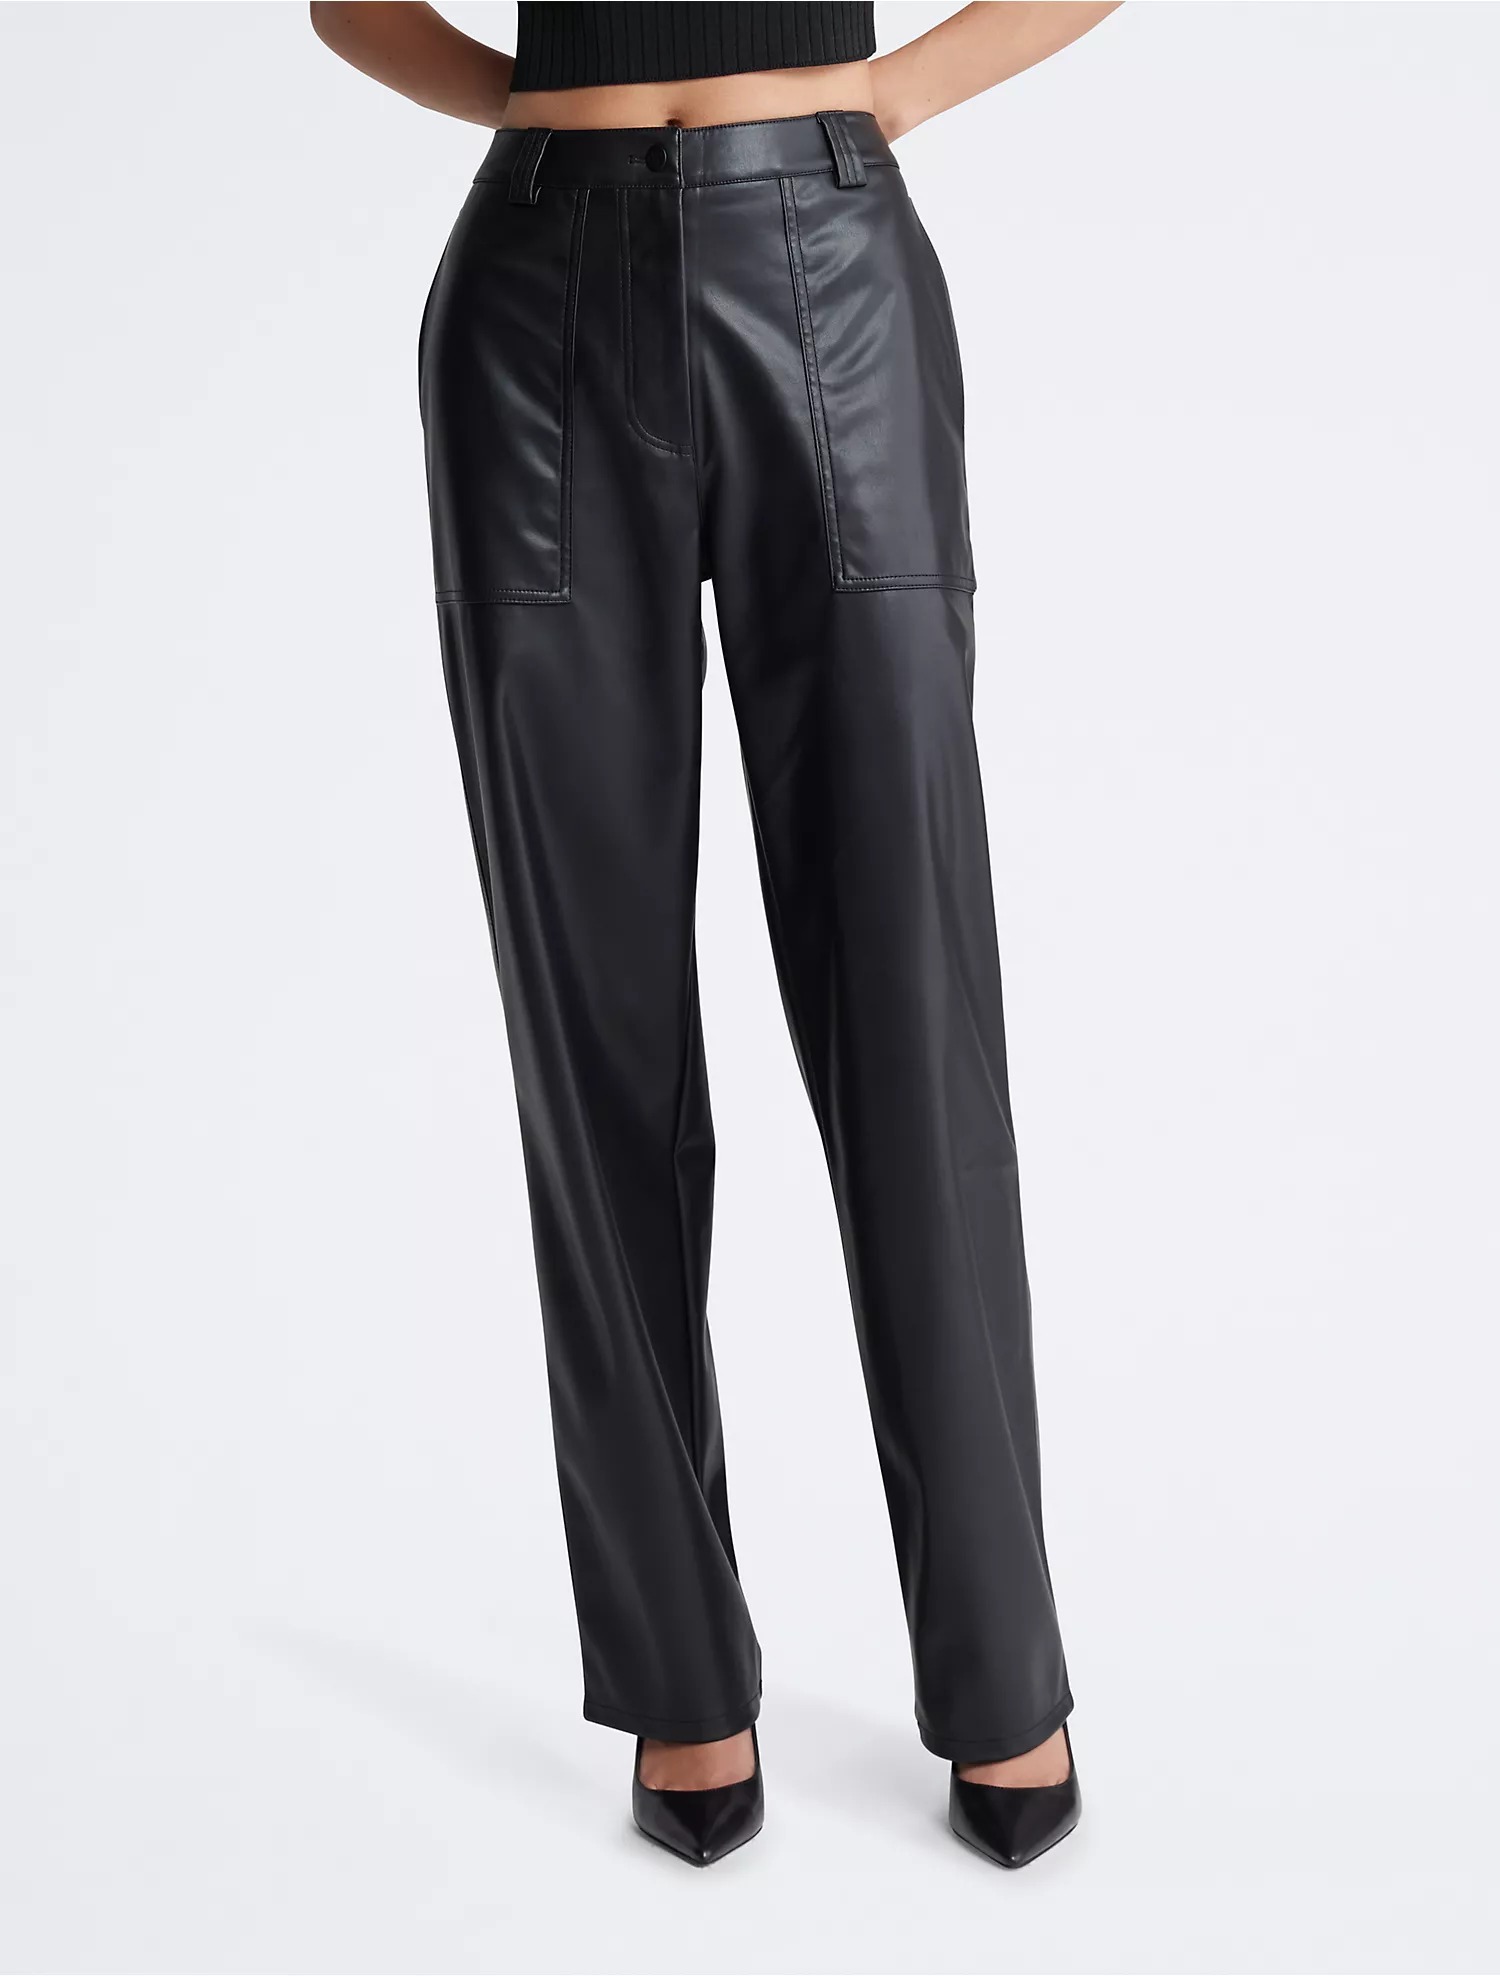 Брюки Calvin Klein Faux Leather High Rise Straight Leg, черный джинсы прямого кроя с высокой талией и множеством карманов средняя стирка